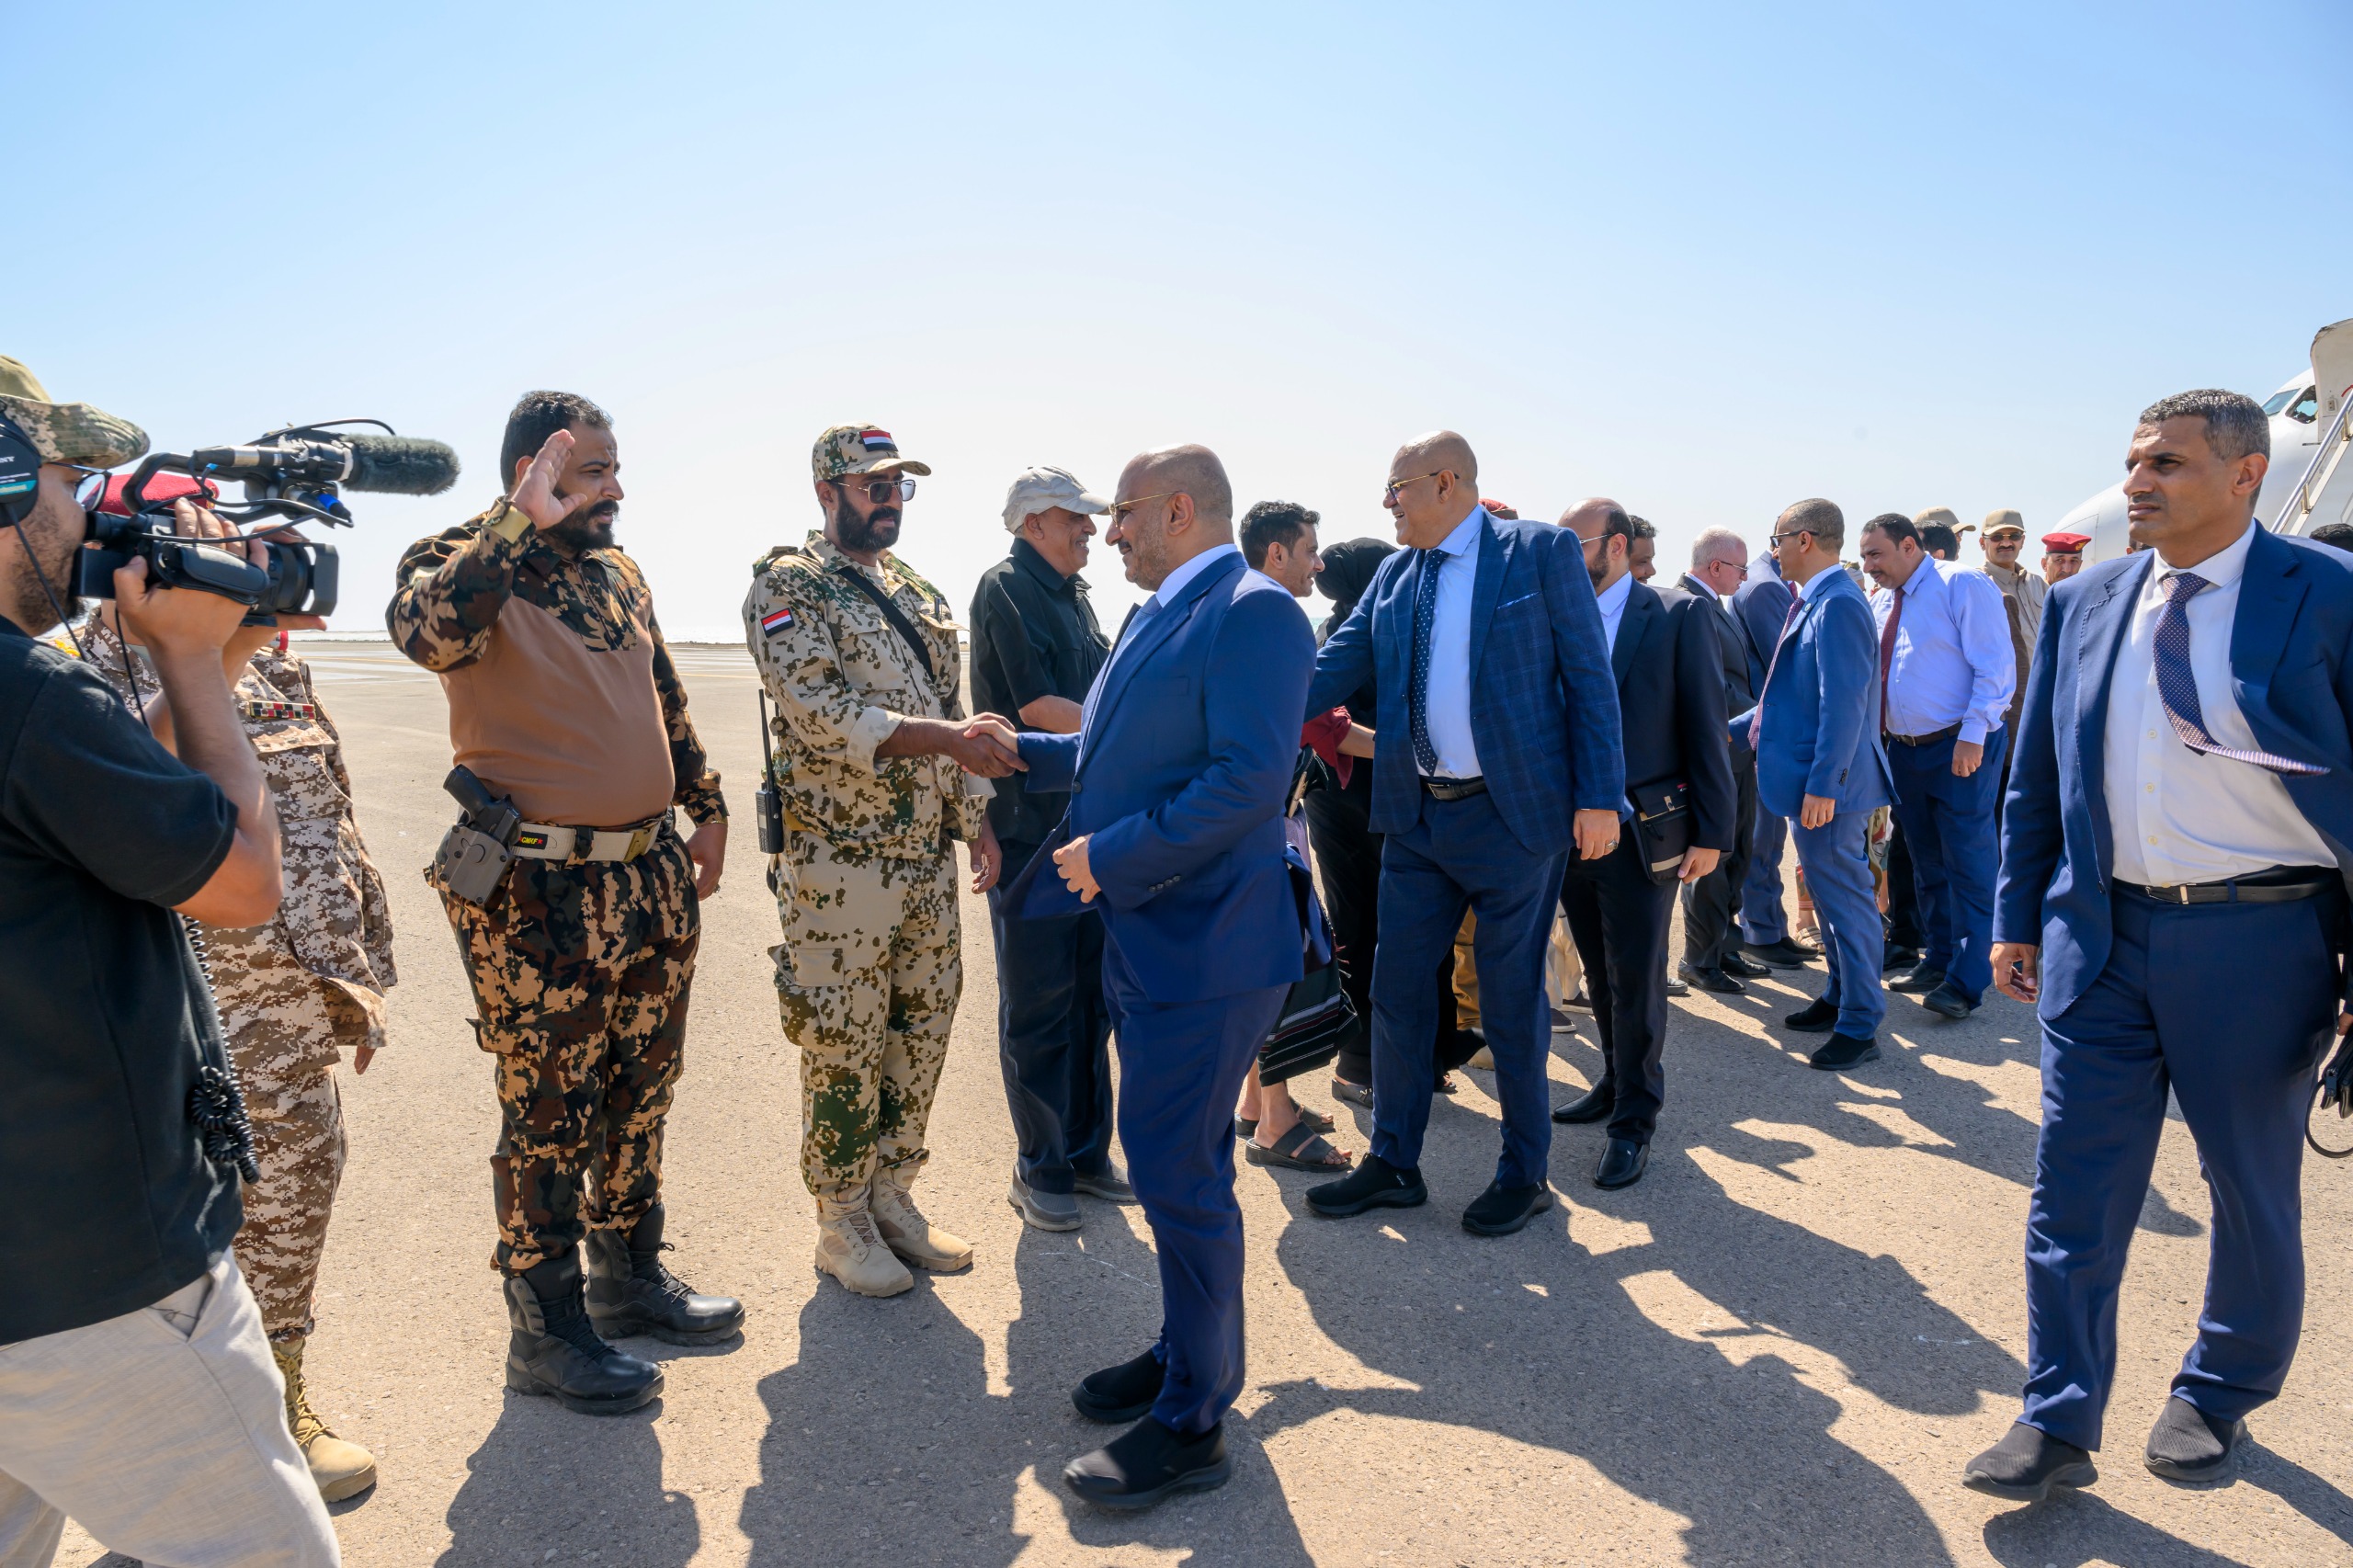 عضو مجلس القيادة العميد طارق صالح يعود إلى أرض الوطن بعد زيارة رسمية إلى جيبوتي